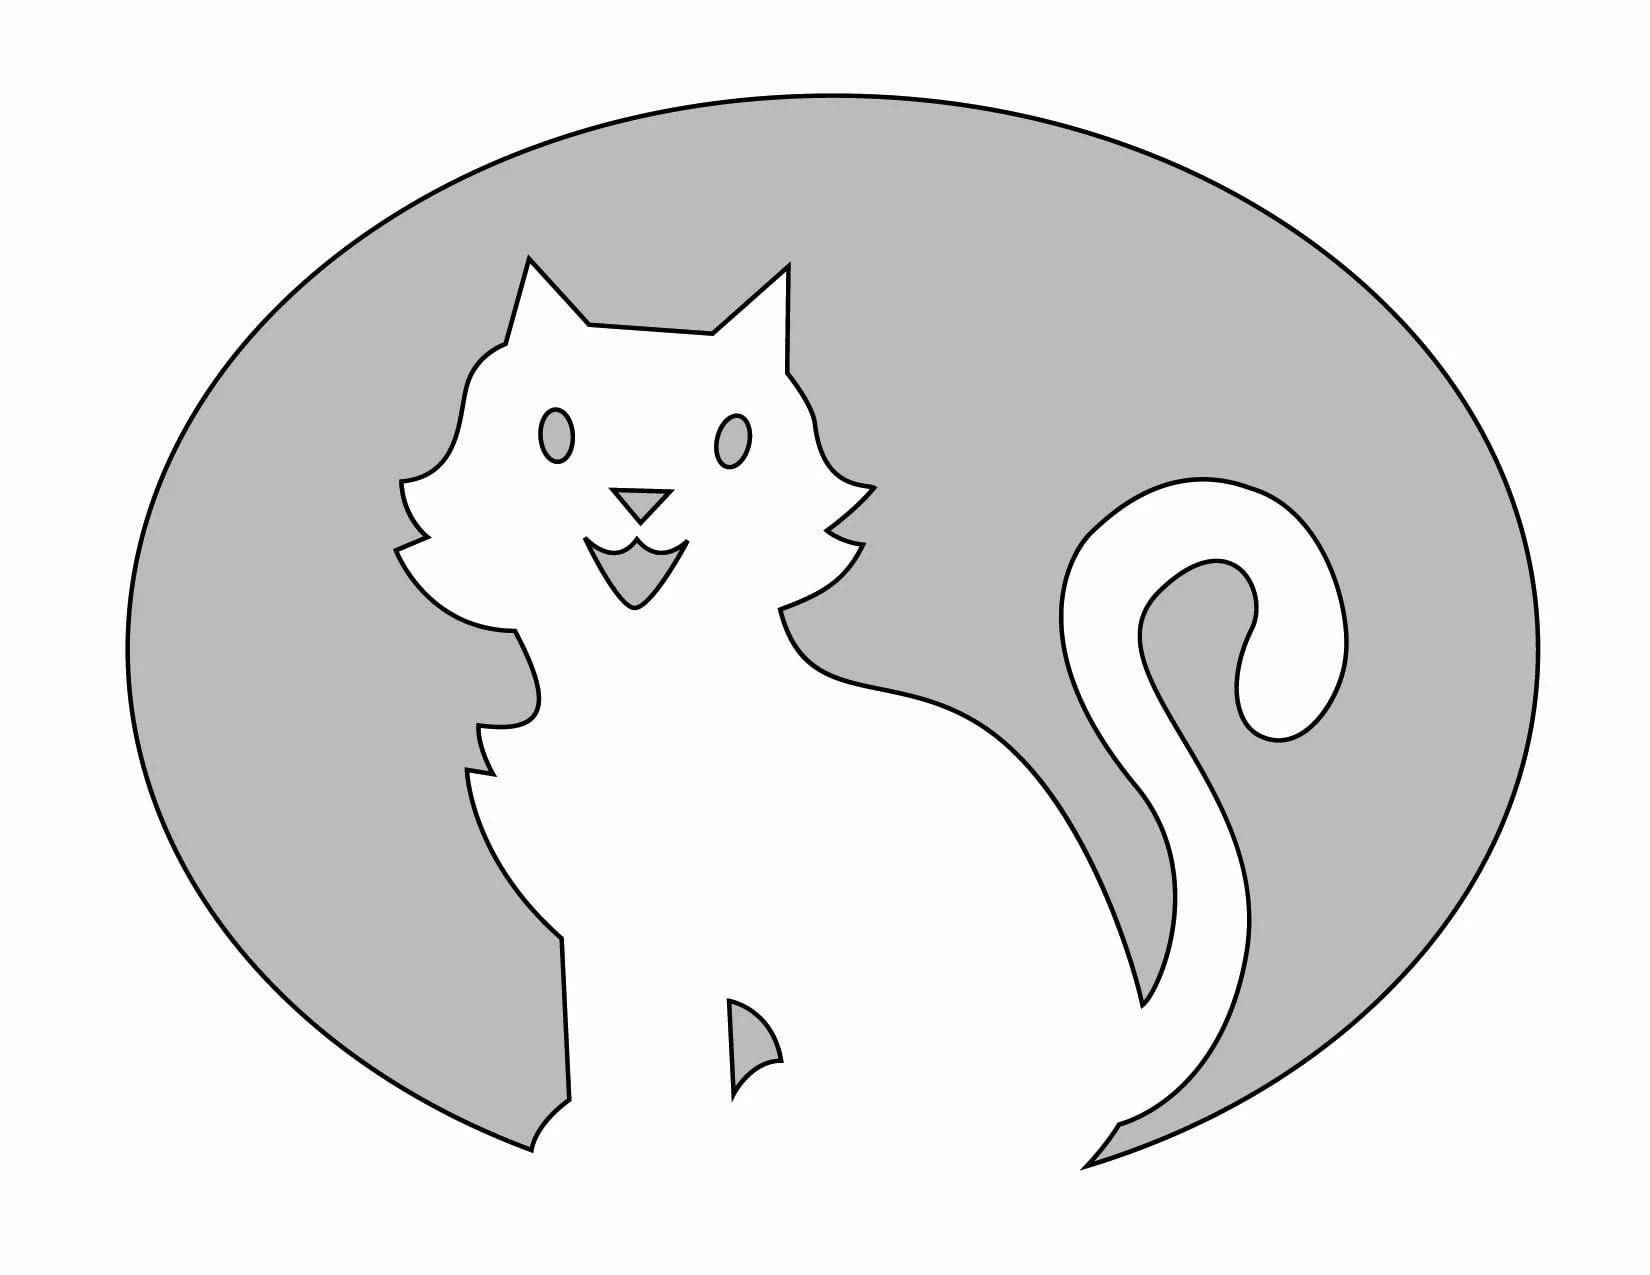 Аппликация кошка из ткани, цветной бумаги, фетра: красивые шаблоны для работы